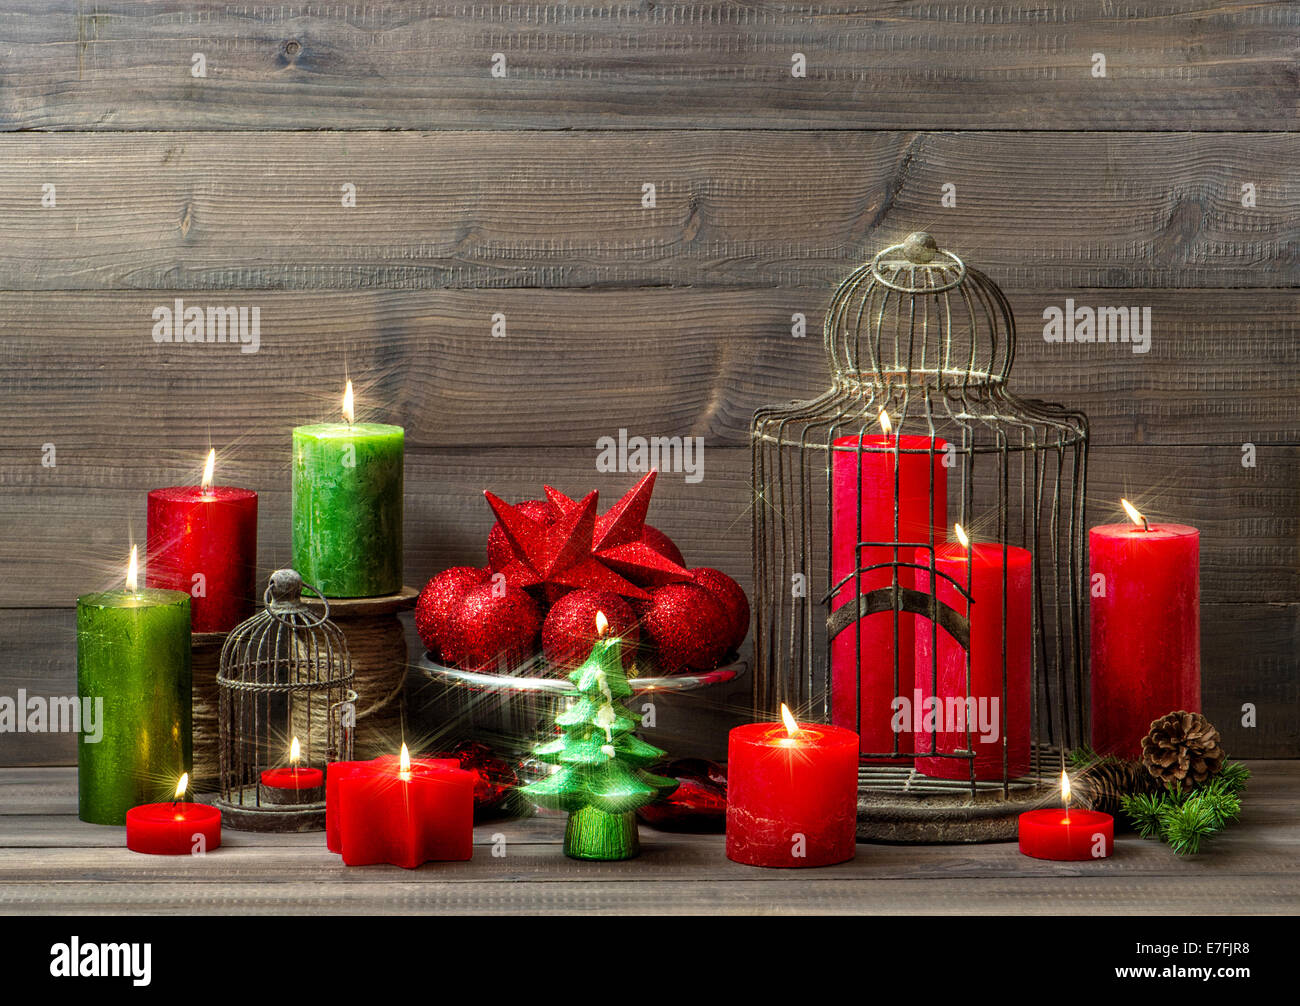 Weihnachts-Dekoration mit brennenden Kerzen, Christbaumkugeln, Vogelkäfig. nostalgische Wohngebäude mit magischen Lichtern Stockfoto